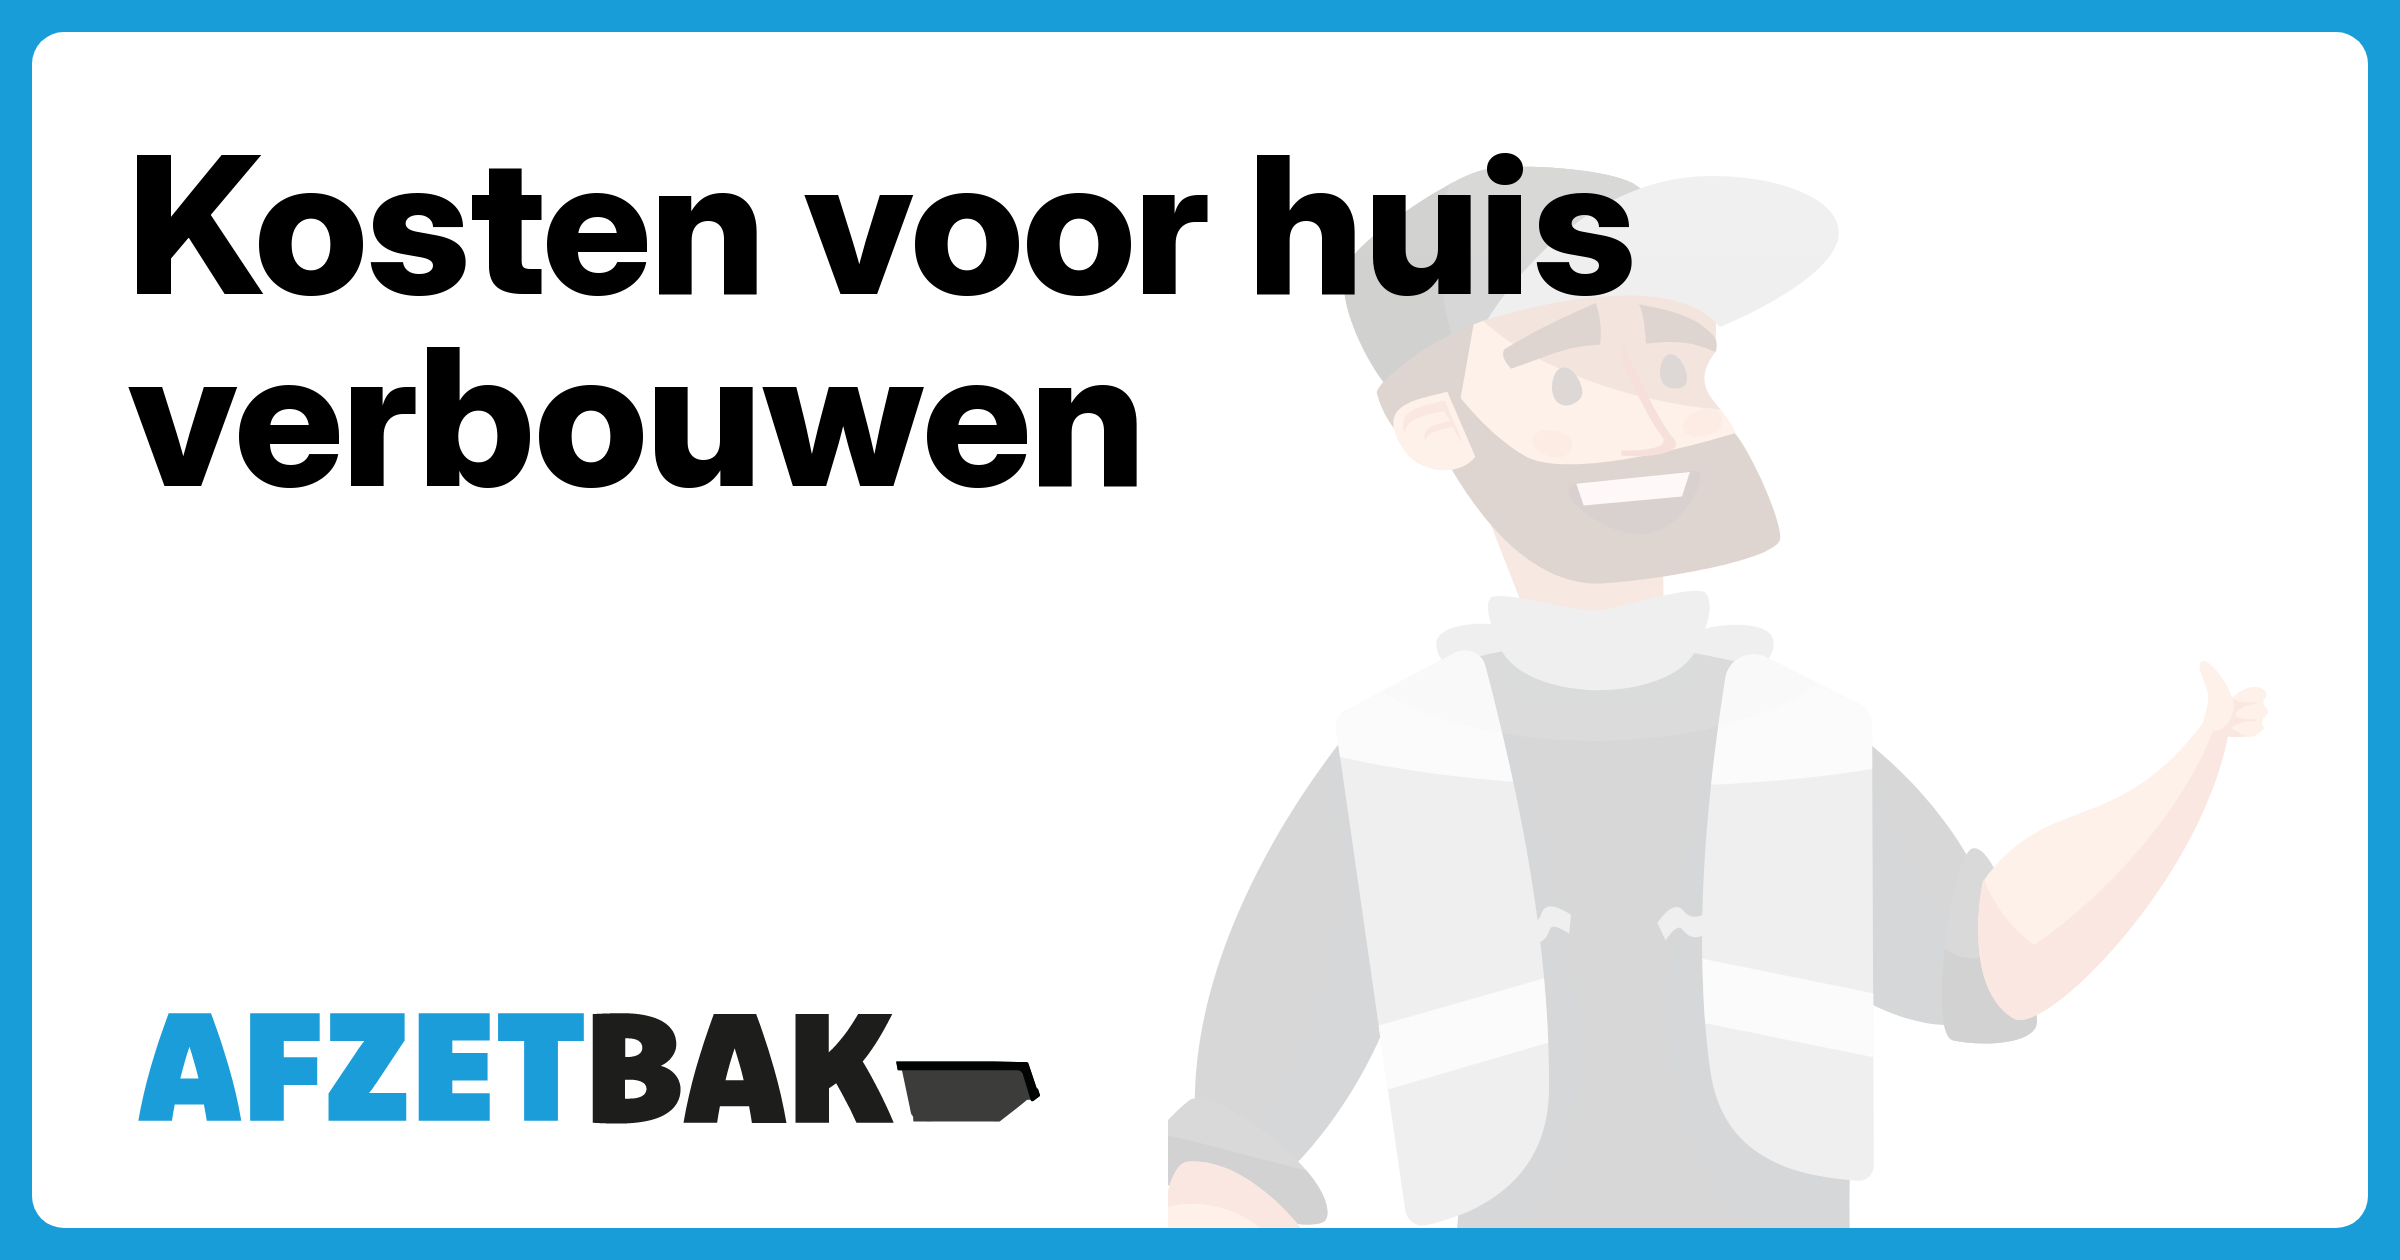 Kosten voor huis verbouwen - Afzetbak.nl